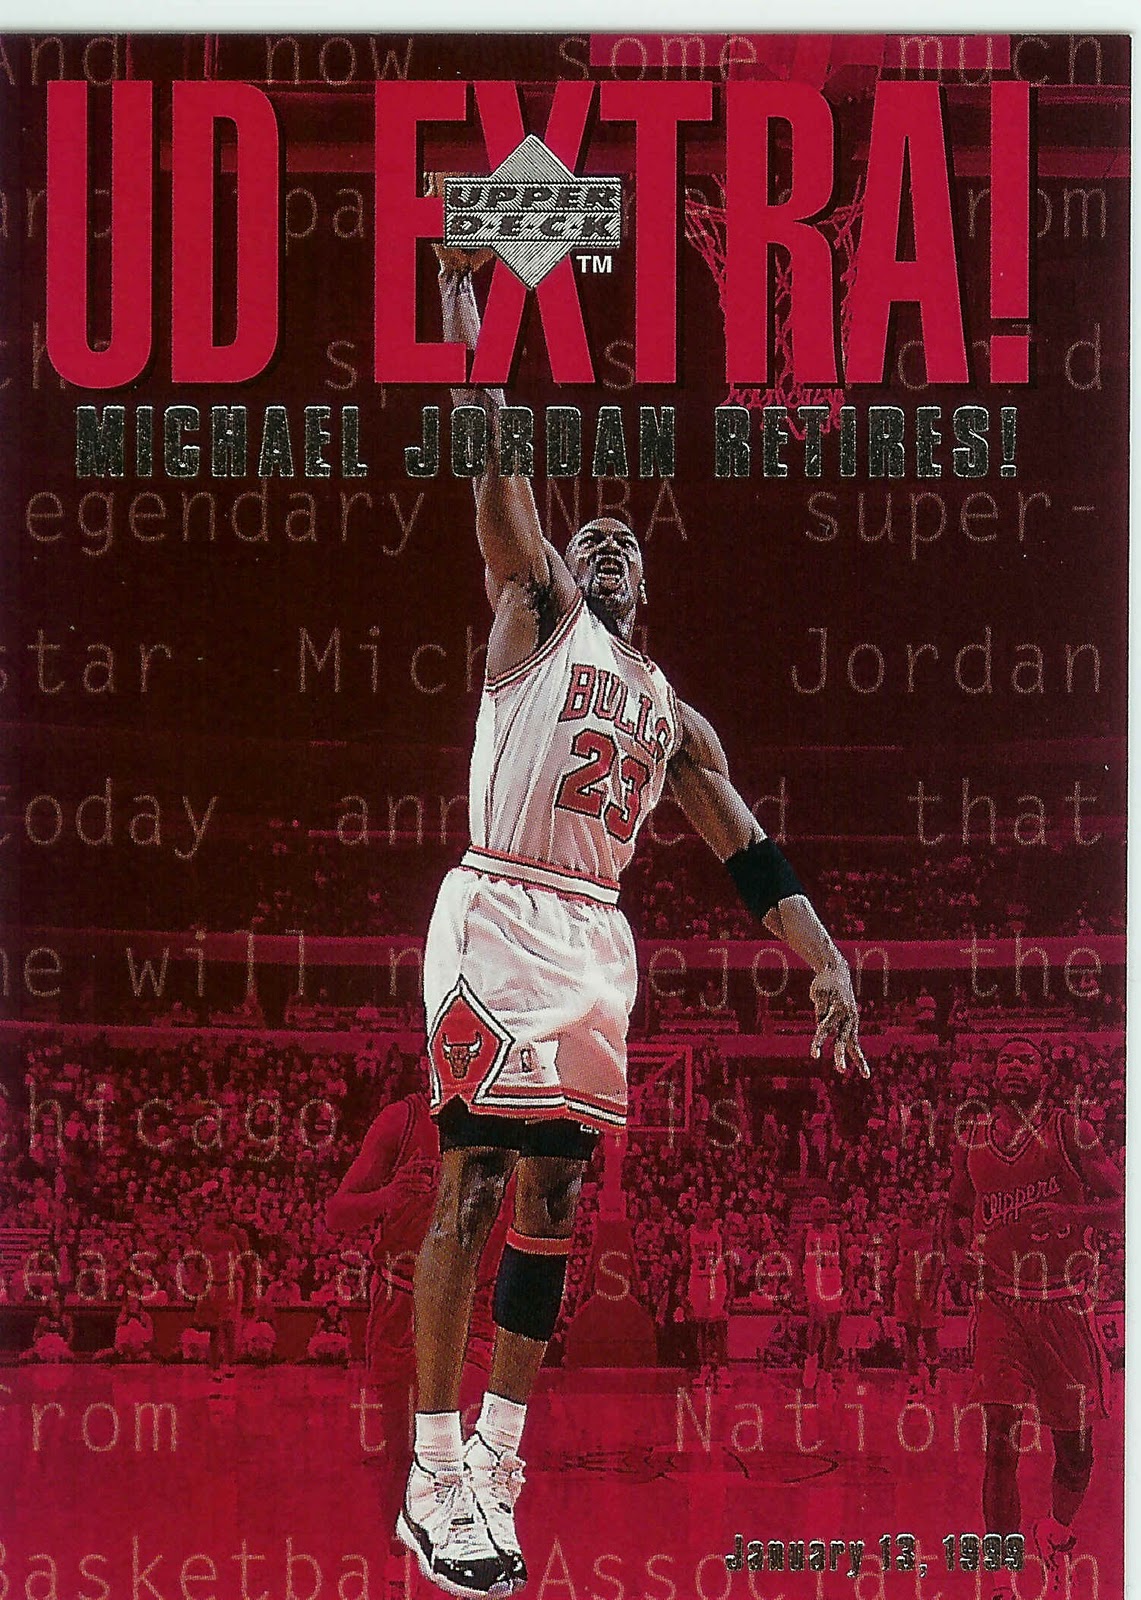 Jordan cards | Basketball Wallpapers For Android: Michael Jordan ...